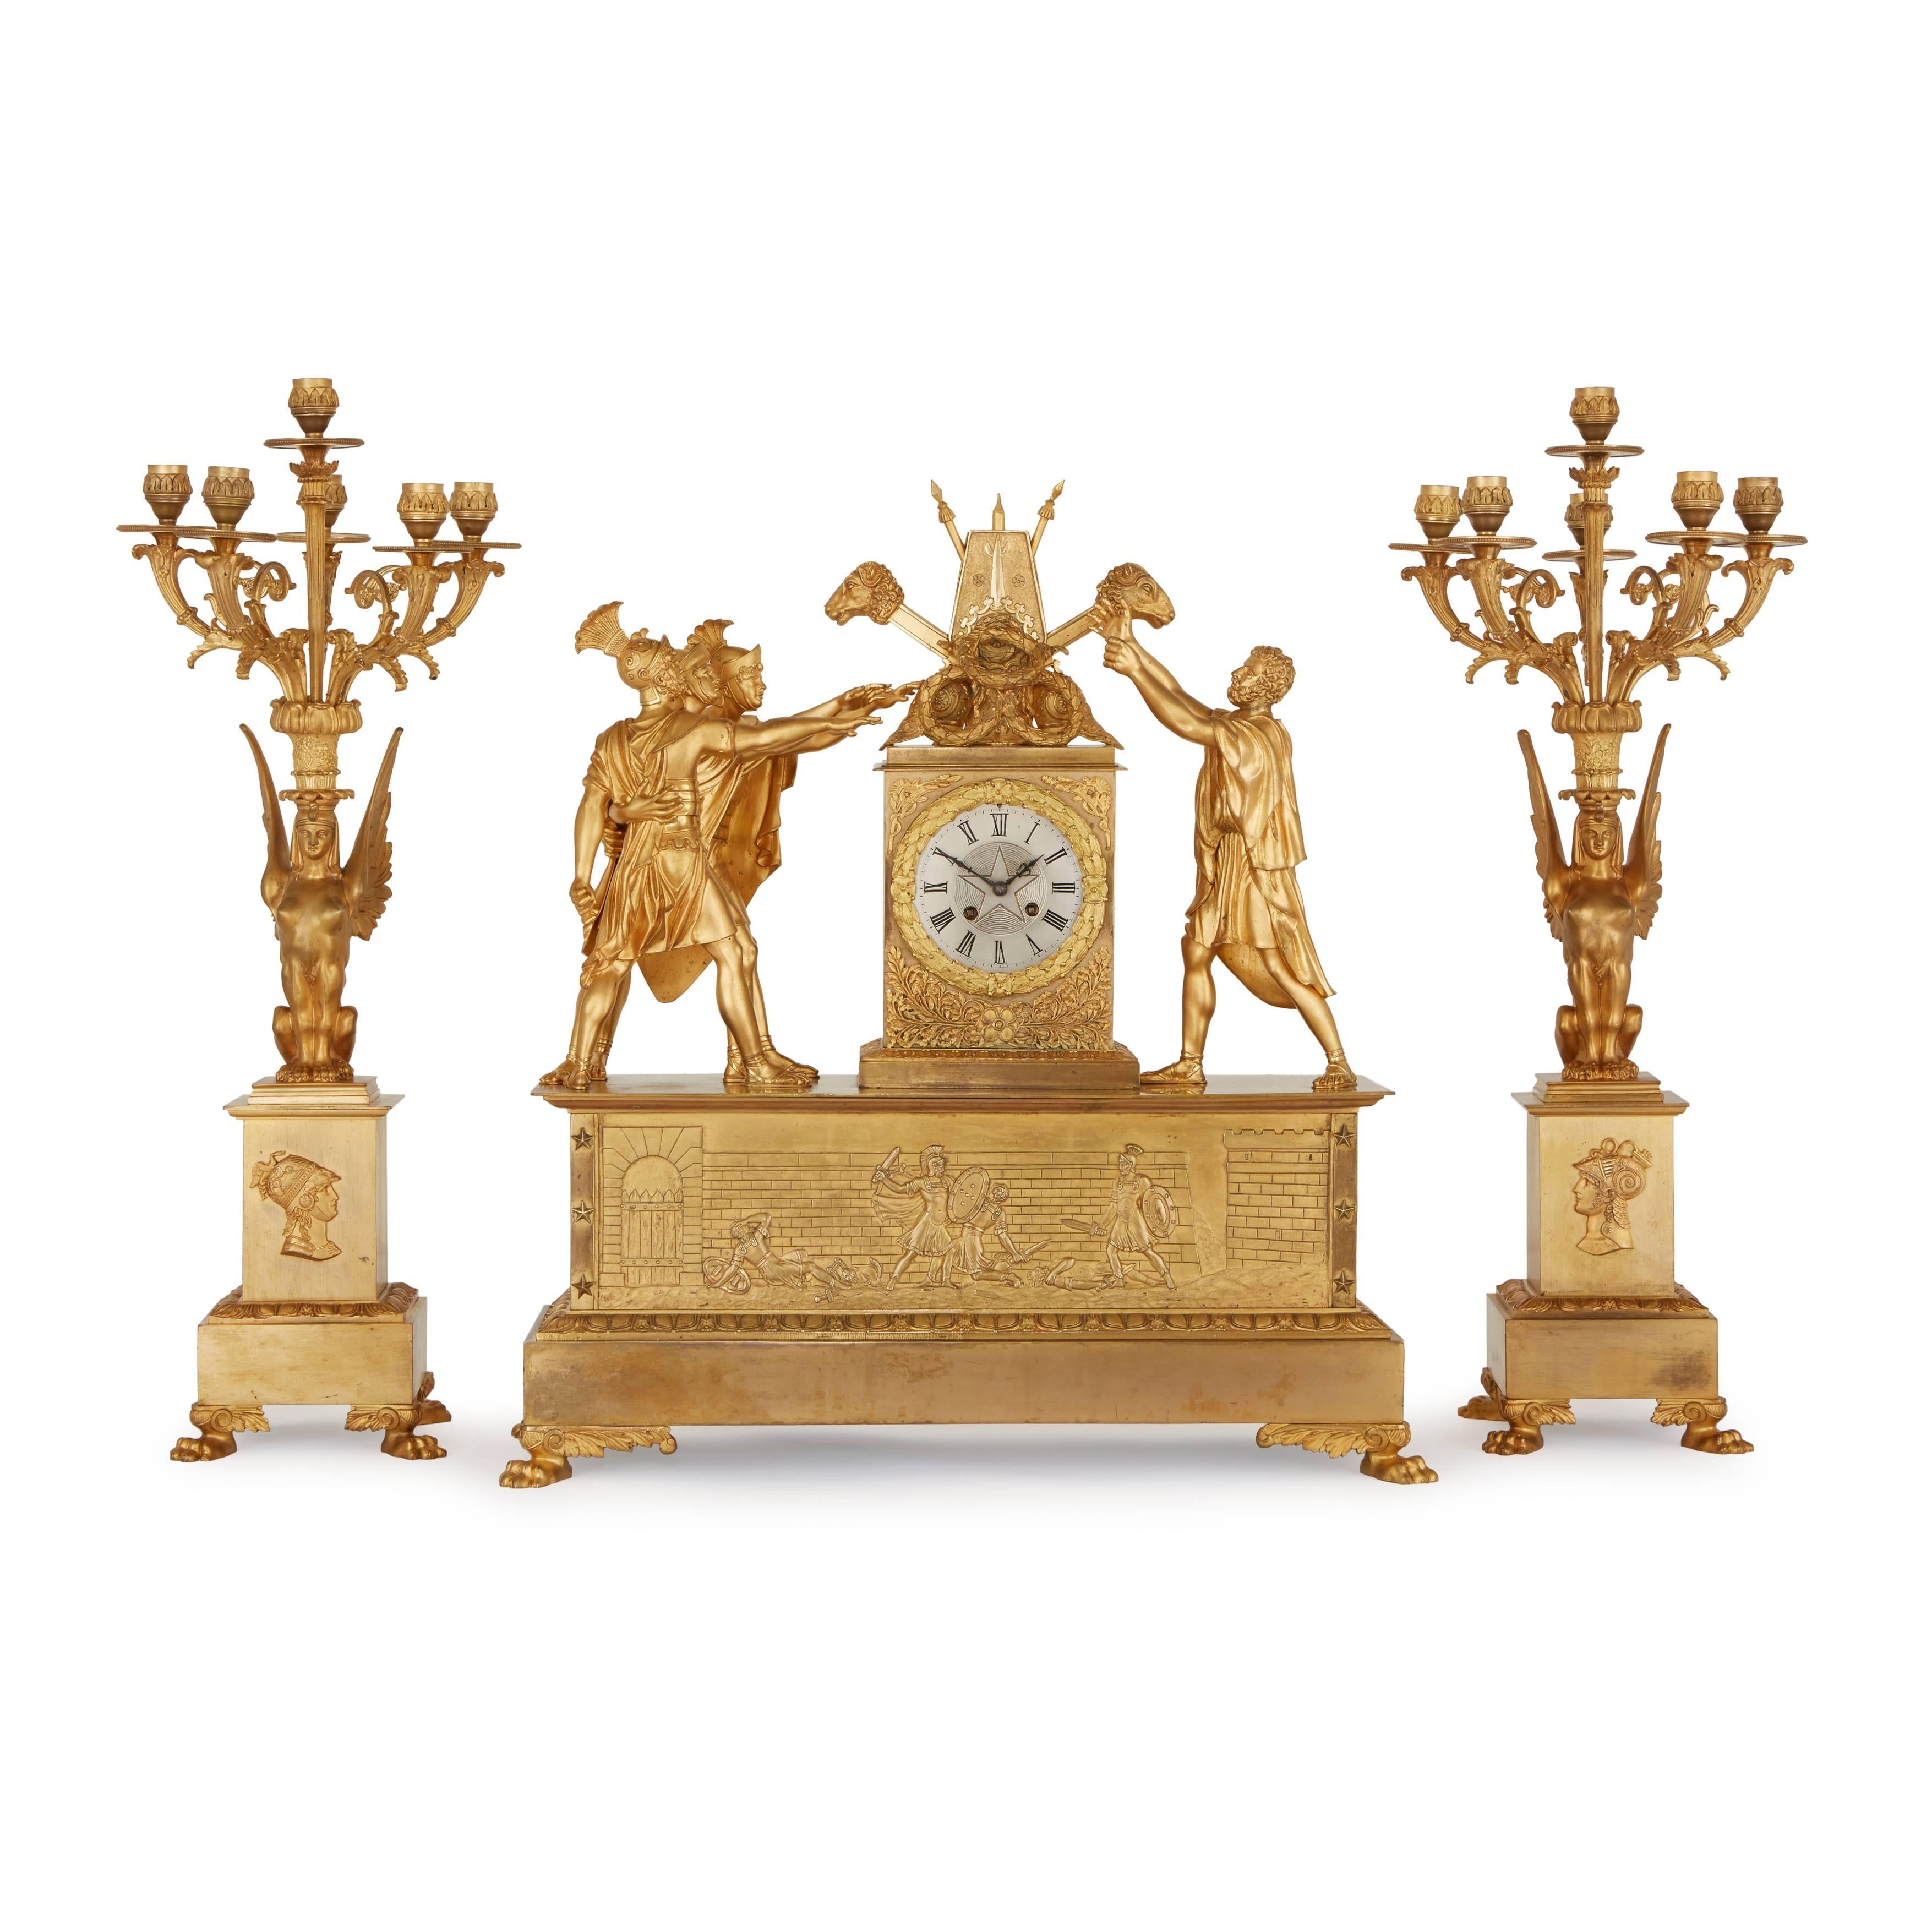 Ce trio exquis du XIXe siècle comprend une horloge centrale et une paire de candélabres à six lumières. 

Le design du boîtier de l'horloge est largement reconnu comme étant inspiré de l'un des tableaux les plus importants de la Révolution